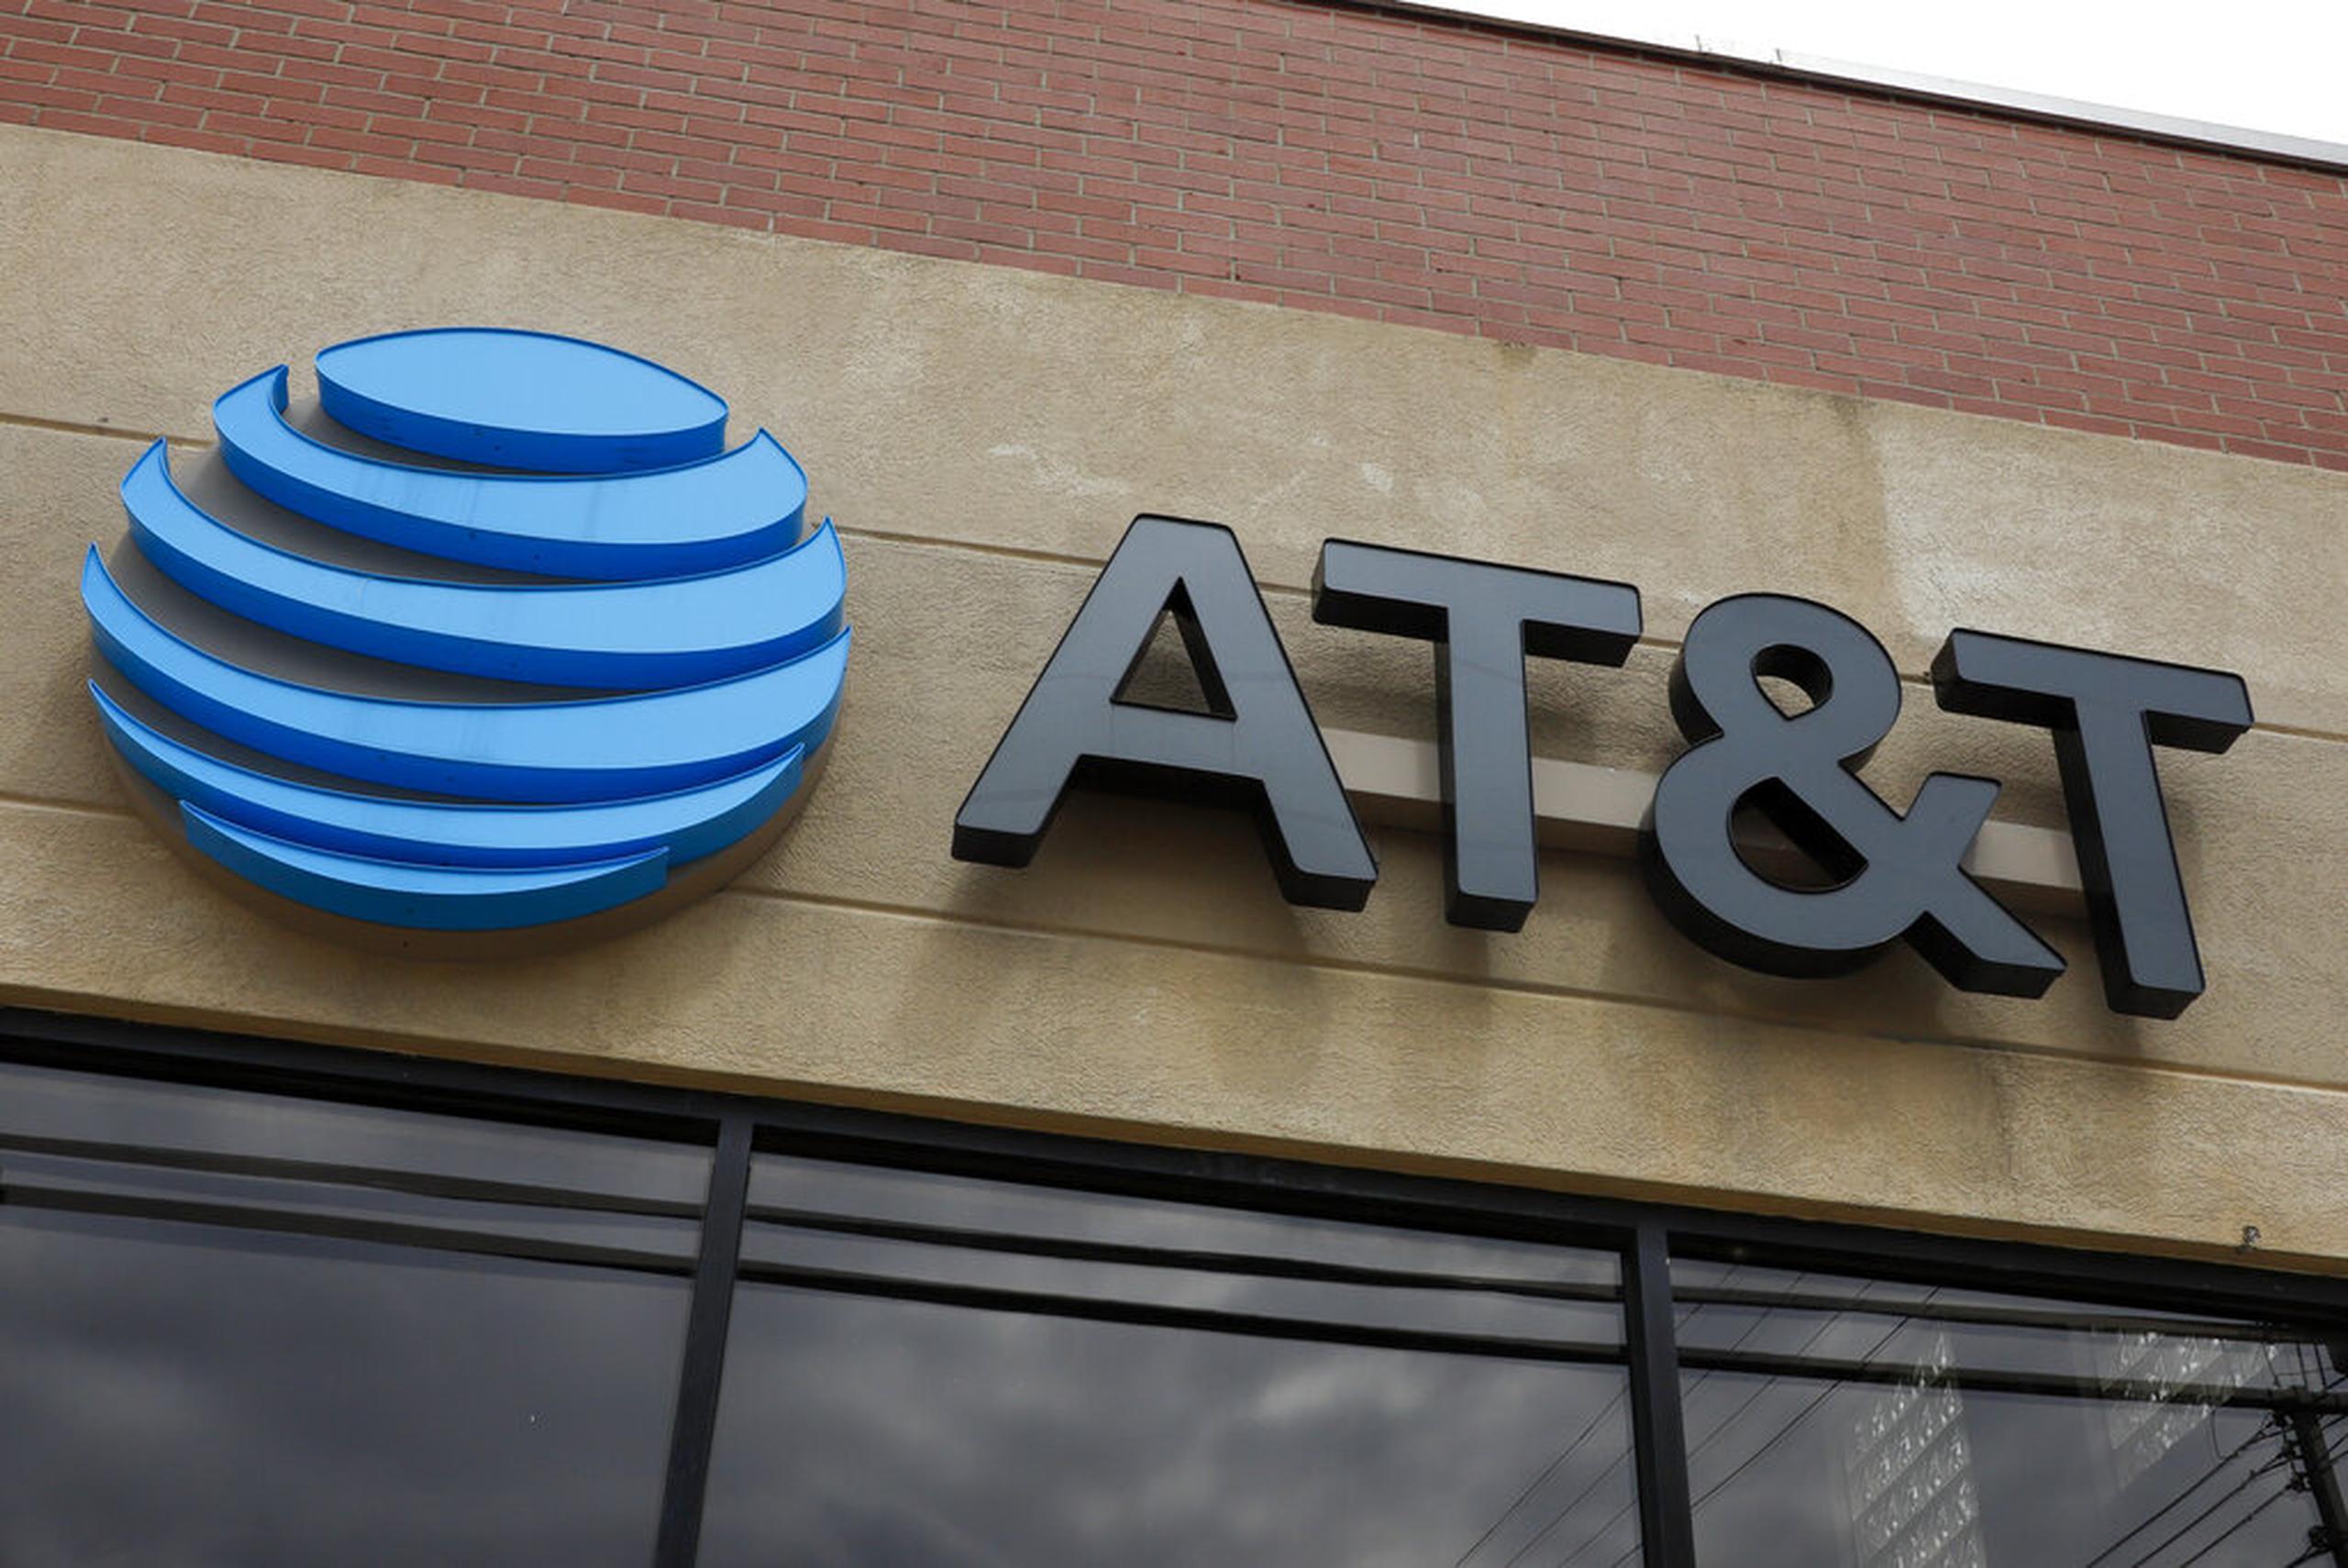 AT&T indicó que solamente darán servicio a clientes existentes.